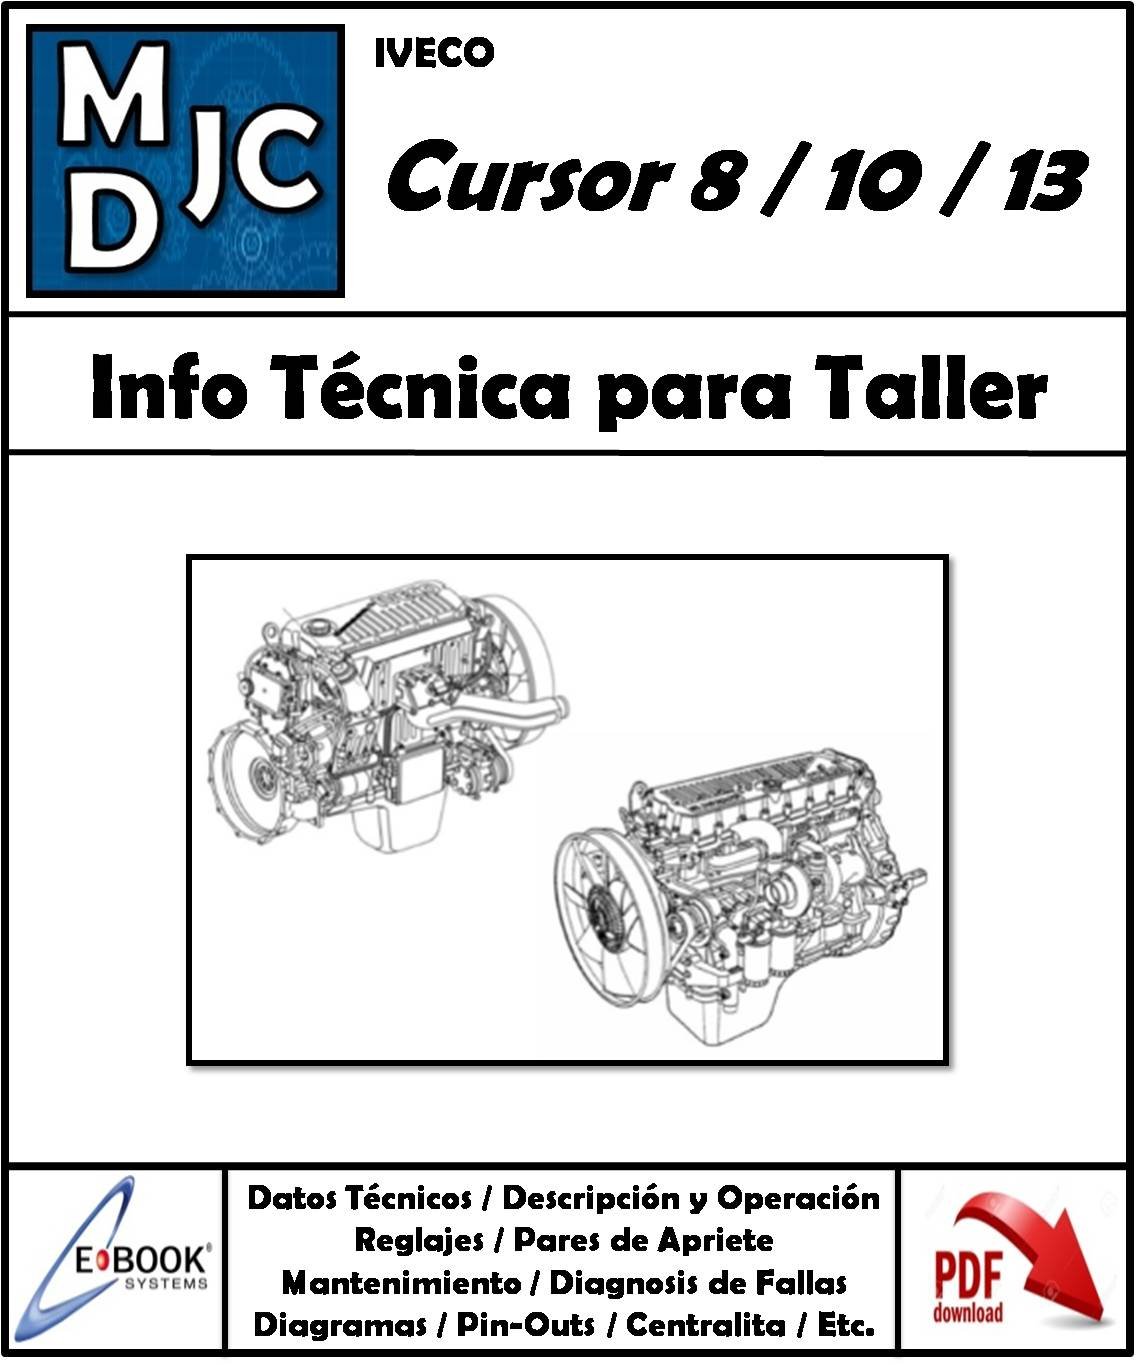 Iveco  Cursor 8 / 10 / 13  Motores  F2B / F3A / F3B